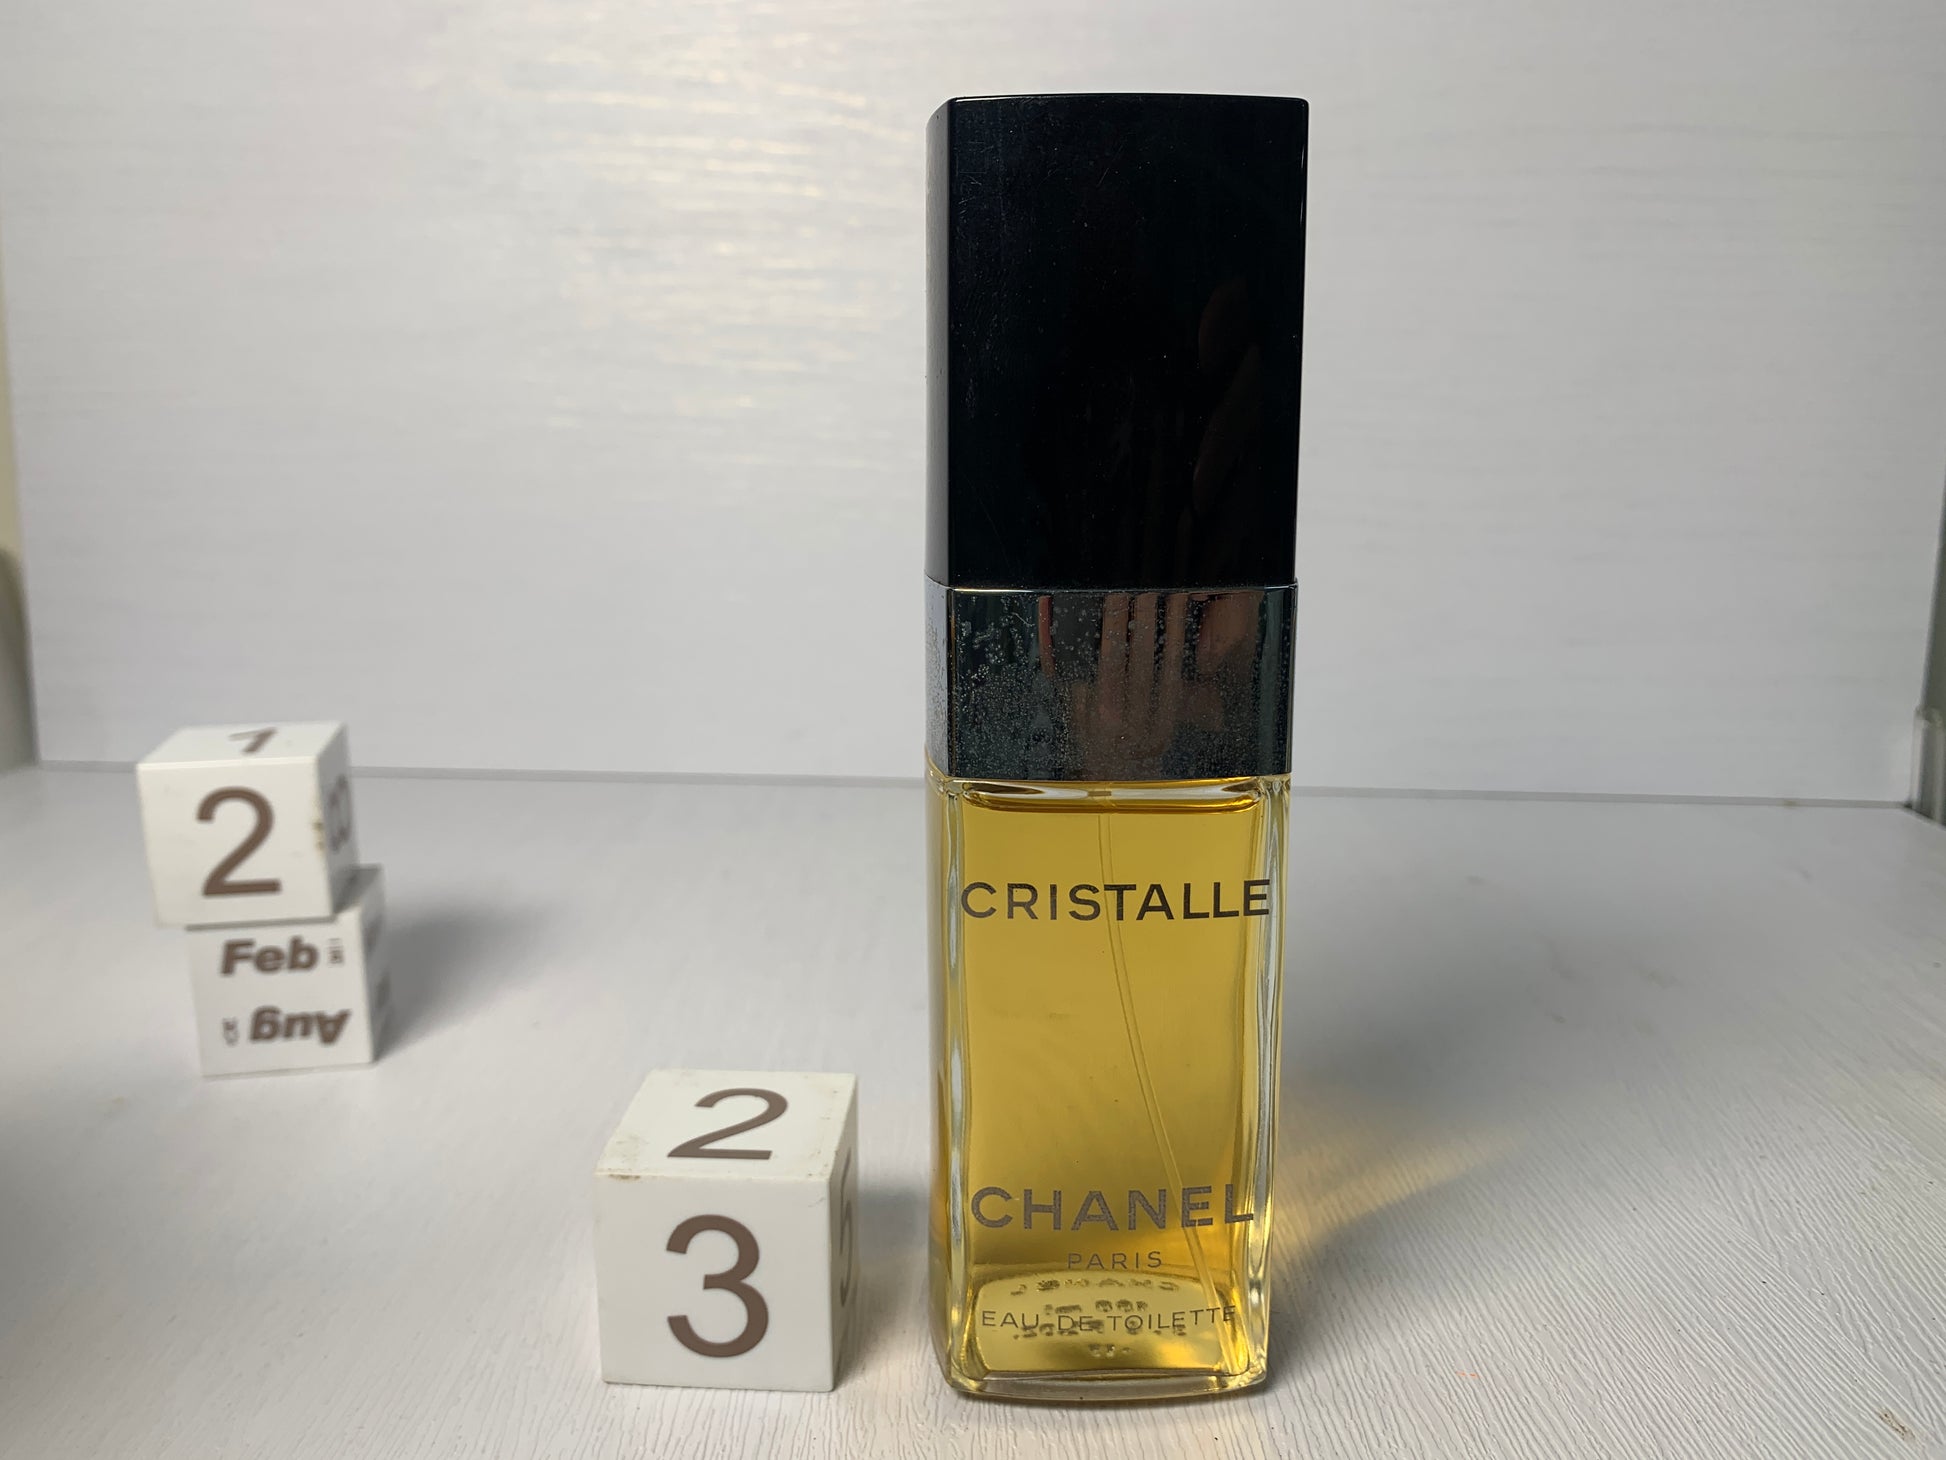 Rare Chanel Cristalle Eau de toilette edt 100ml 3.4 oz - 12FEB22